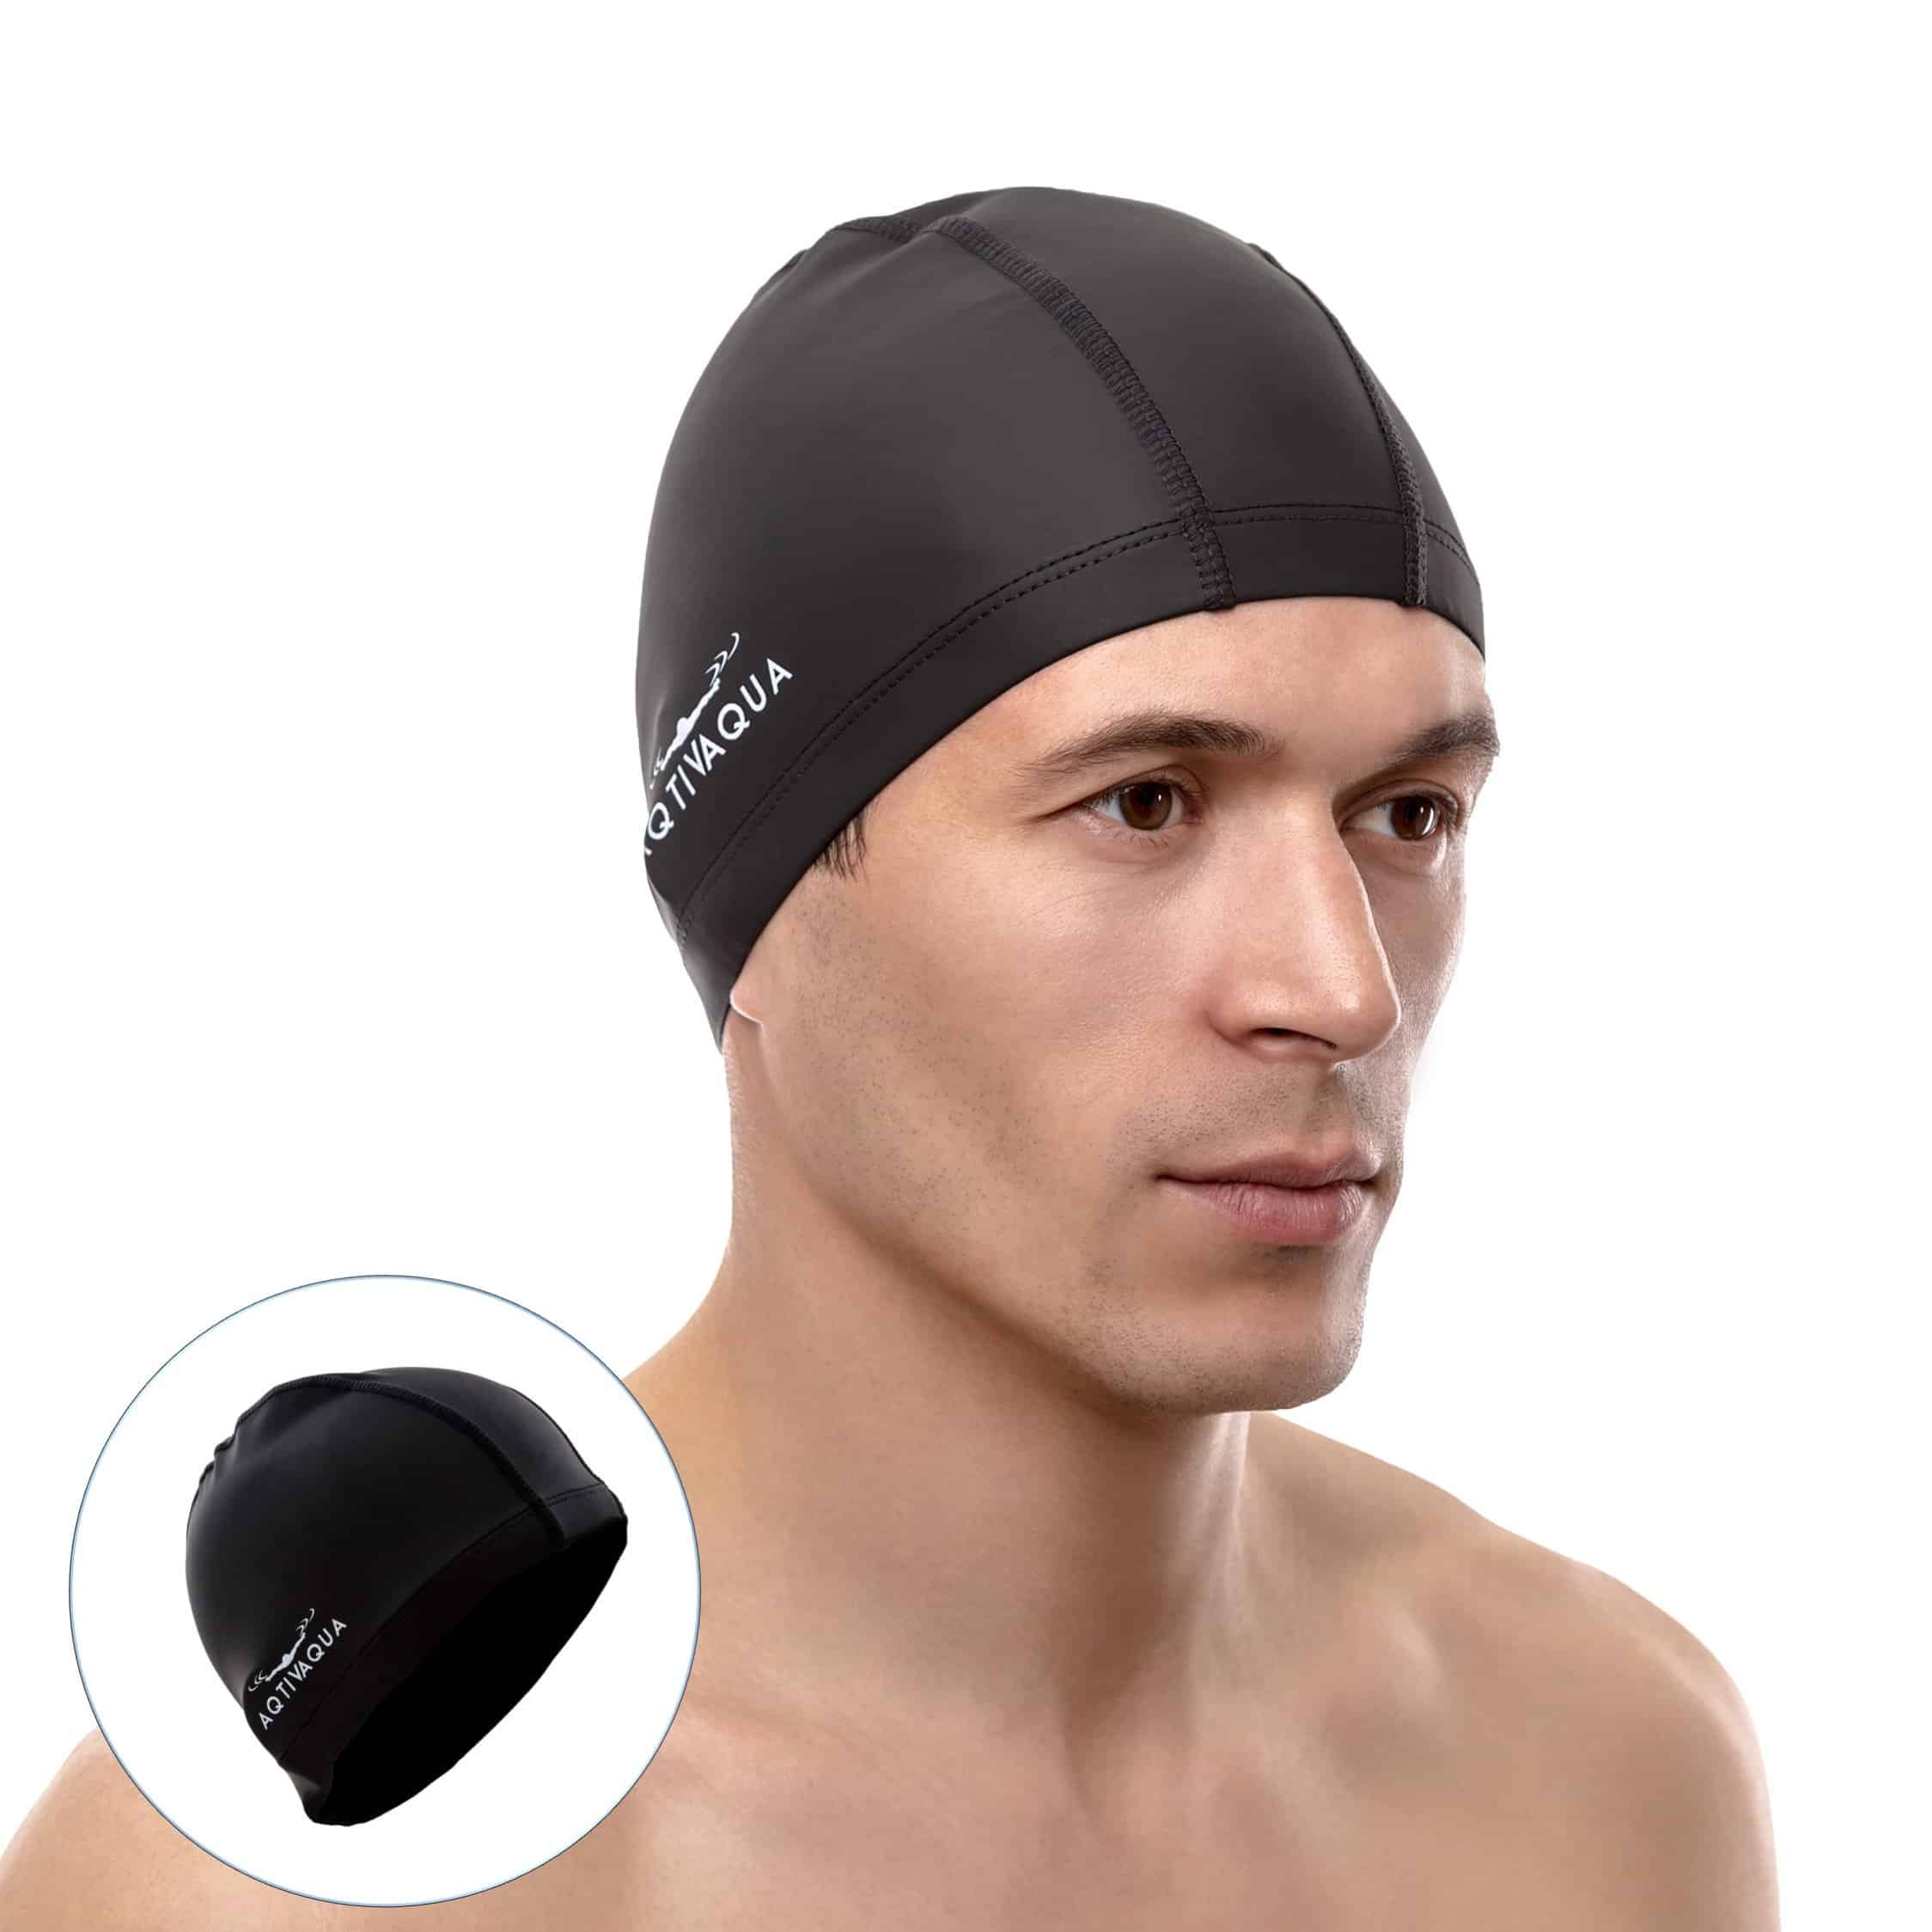 AqtivAqua Spandex Swim Cap With Protective Layer